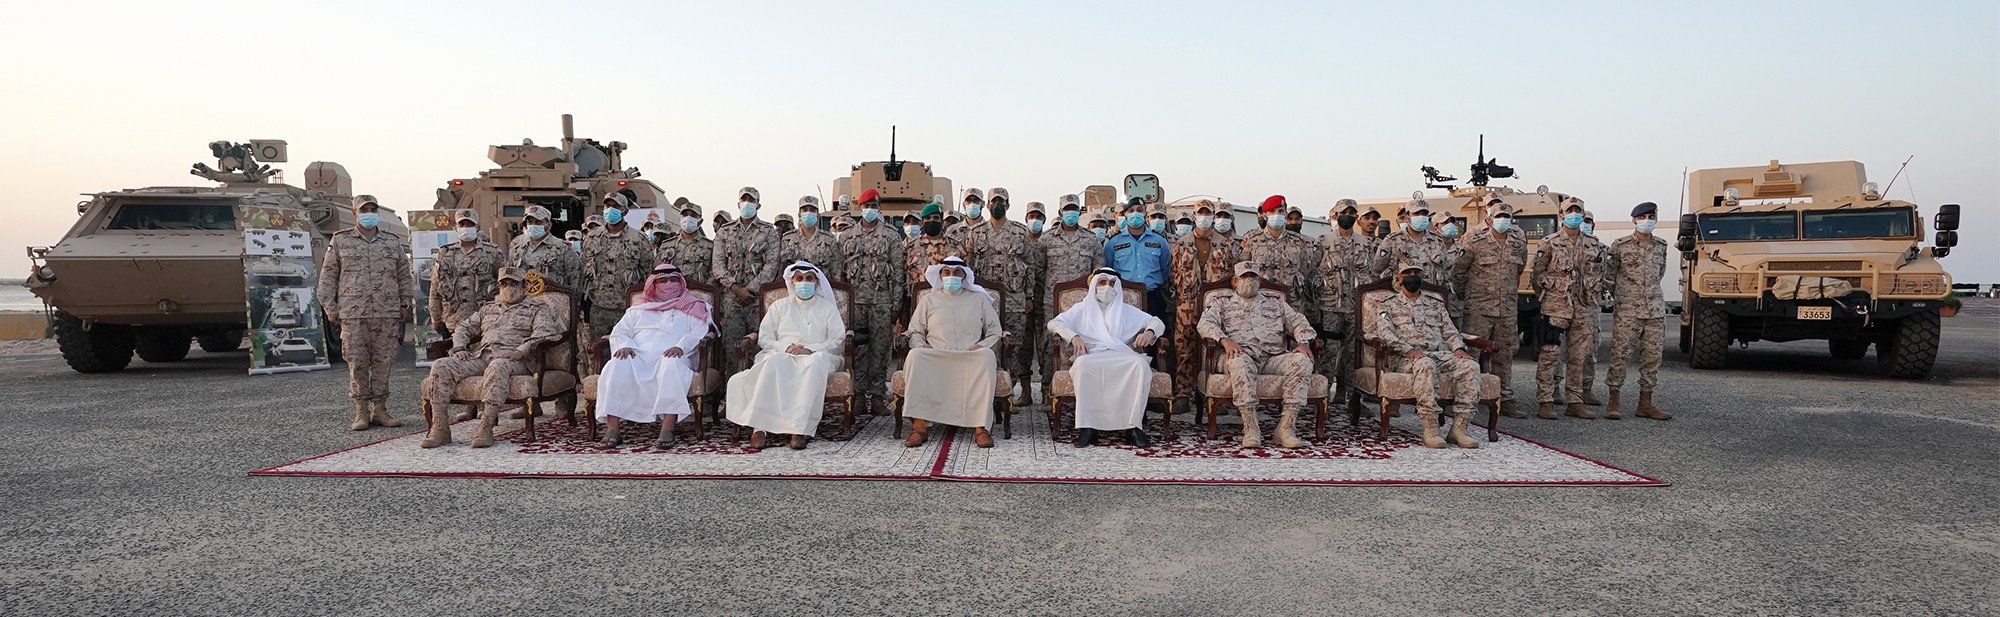 His Highness the Prime Minister Sheikh Sabah Khaled Al-Hamad Al-Sabah visits Land Forces N. country